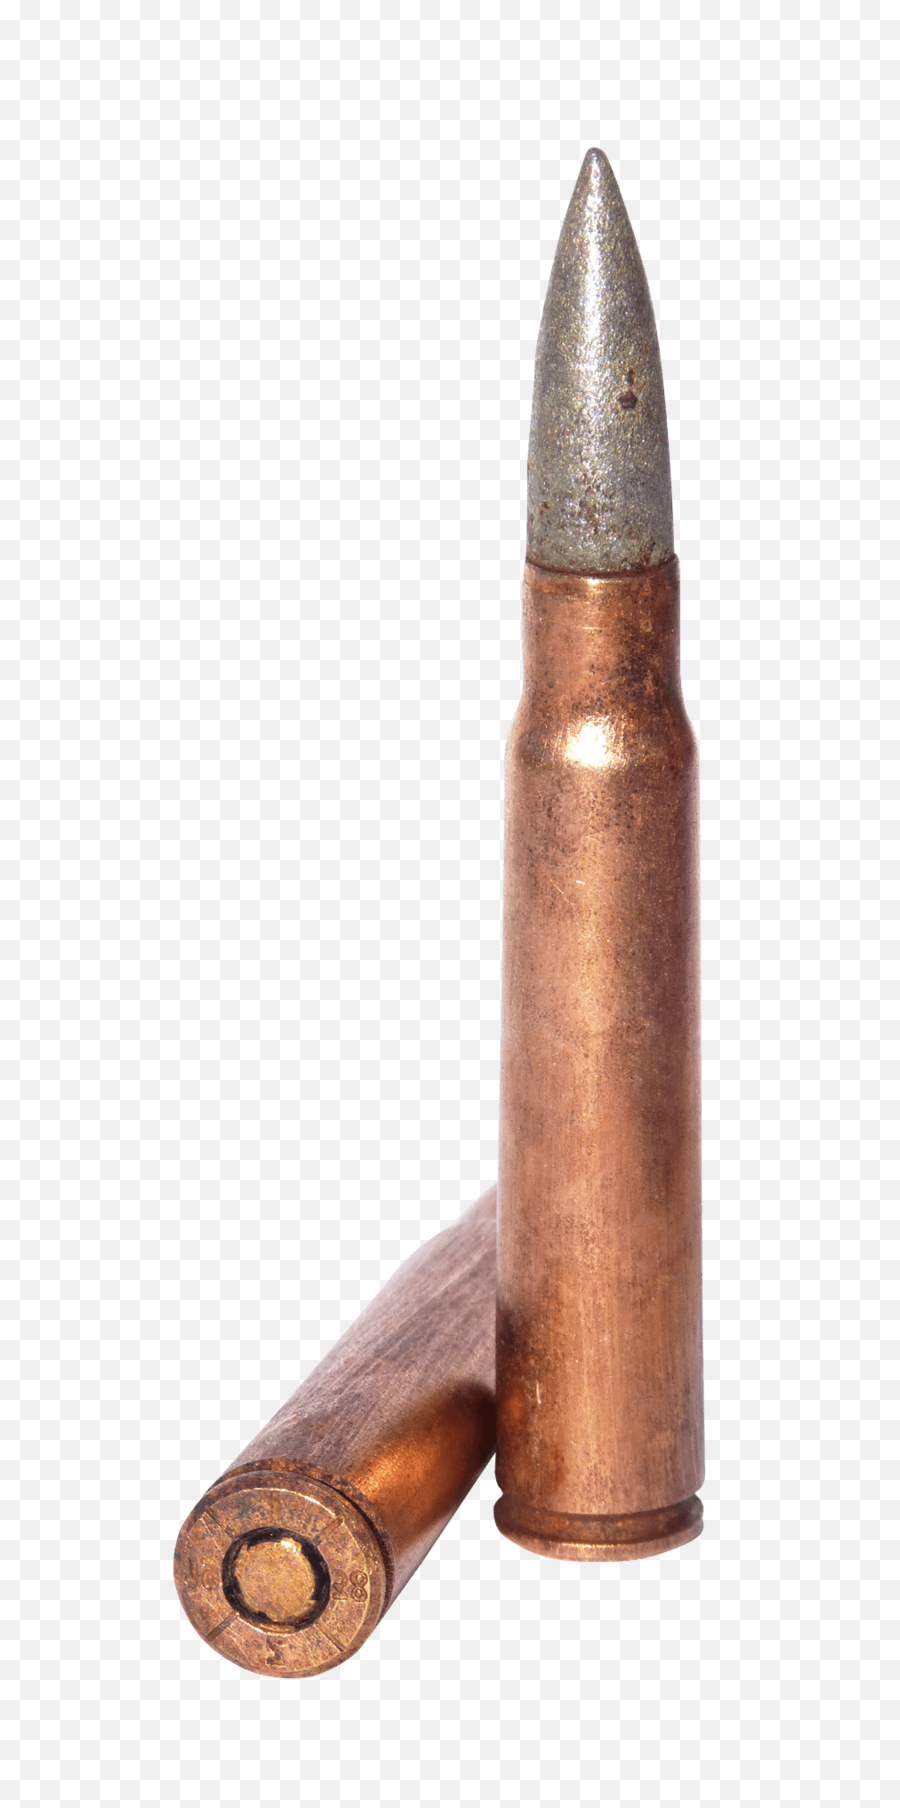 Download Hd Bullet Png Transparent Image - Bullet 1944 Bullet,Bullet Png